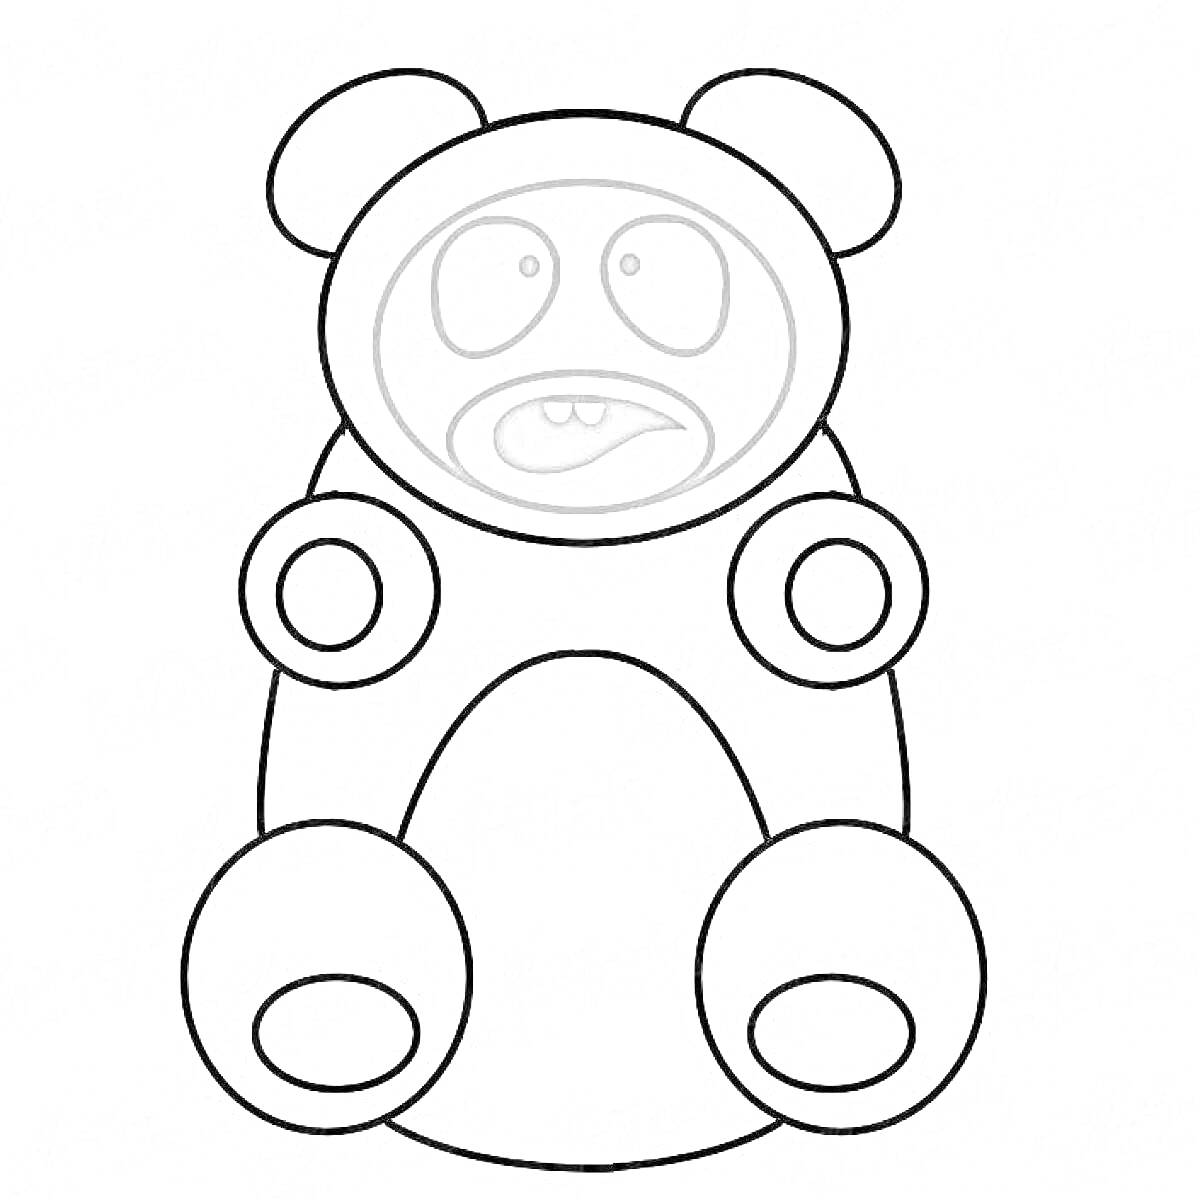 Раскраска Валера желейный медведь с круглыми лапами и округлыми ушами, с выражением удивления на лице, рот приоткрыт, глаза круглые внутри - зрачки, поднимающиеся вверх